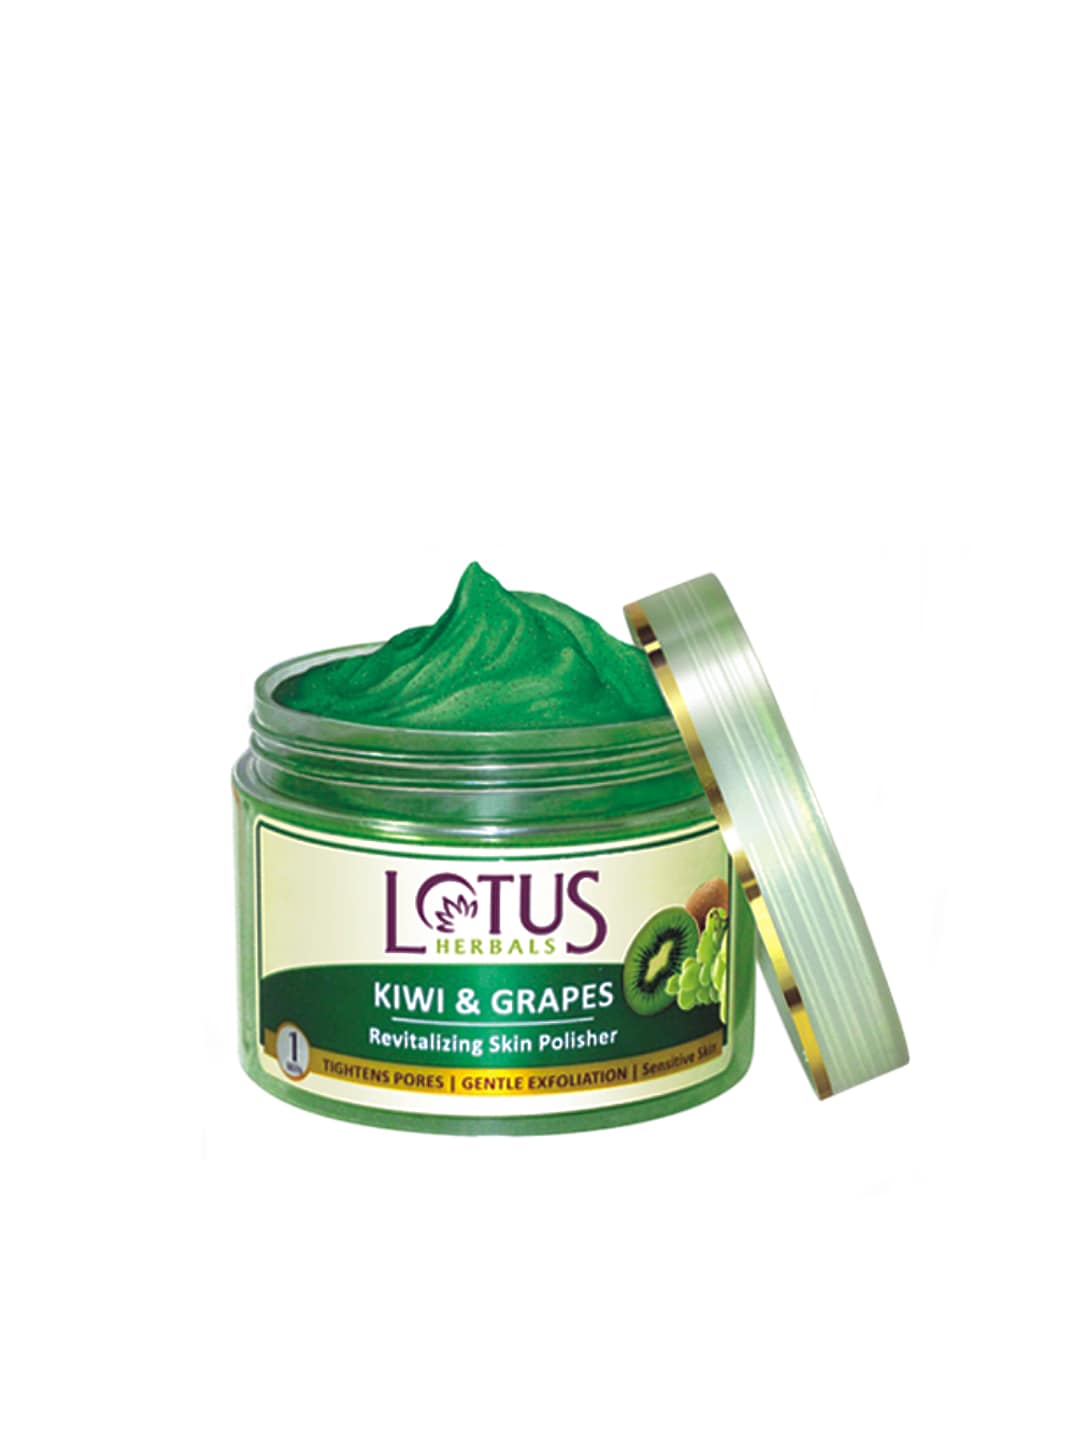 Lotus Herbals Kiwi & Grapes Skin Polisher